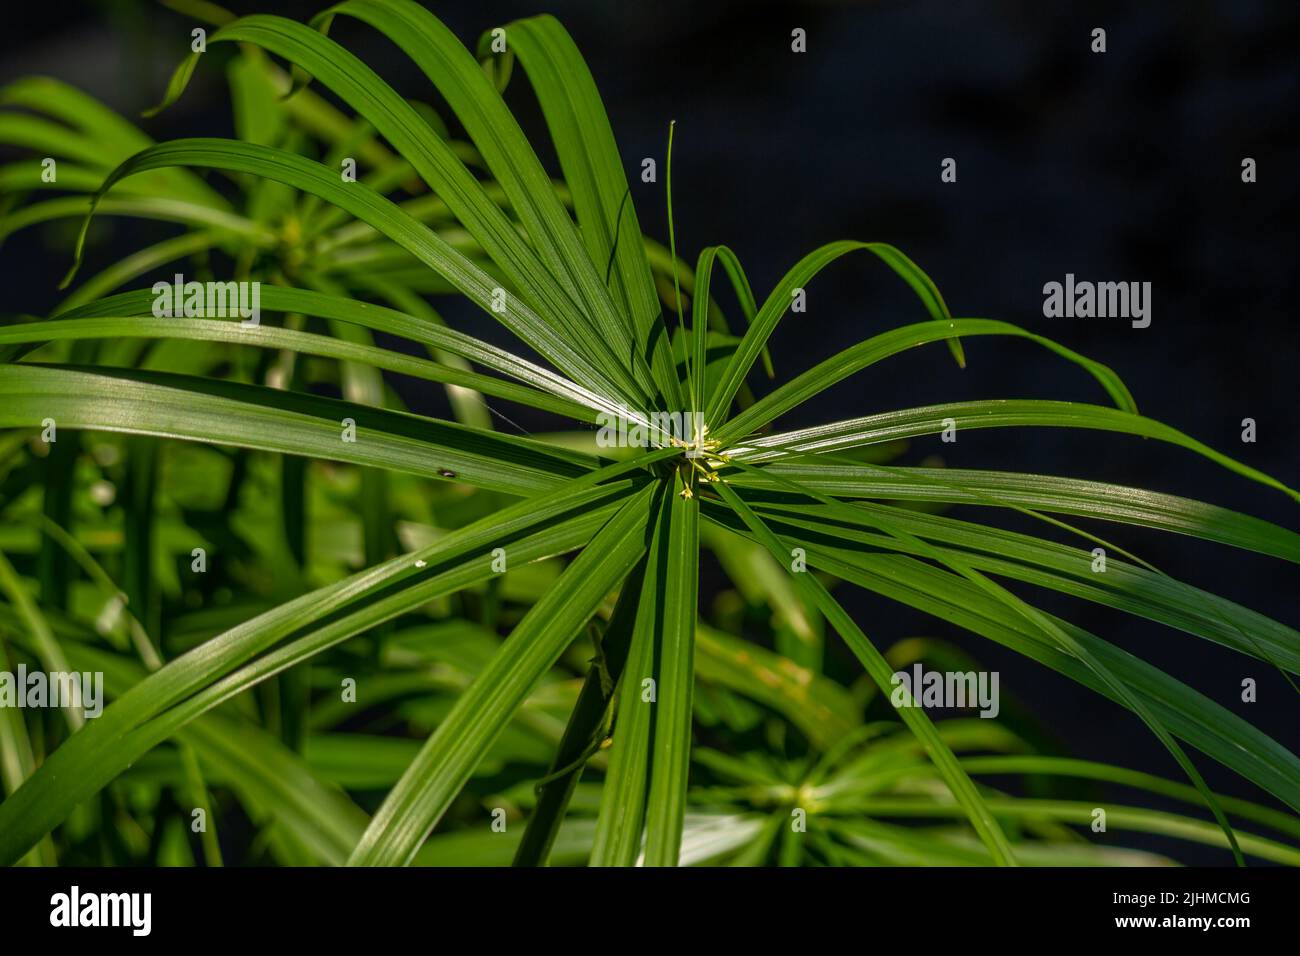 Die Blätter der Regenschirmsedge-Pflanze in Form von kleinen Klingen breiten sich wie ein Regenschirm aus, isoliert auf einem verschwommenen Hintergrund Stockfoto